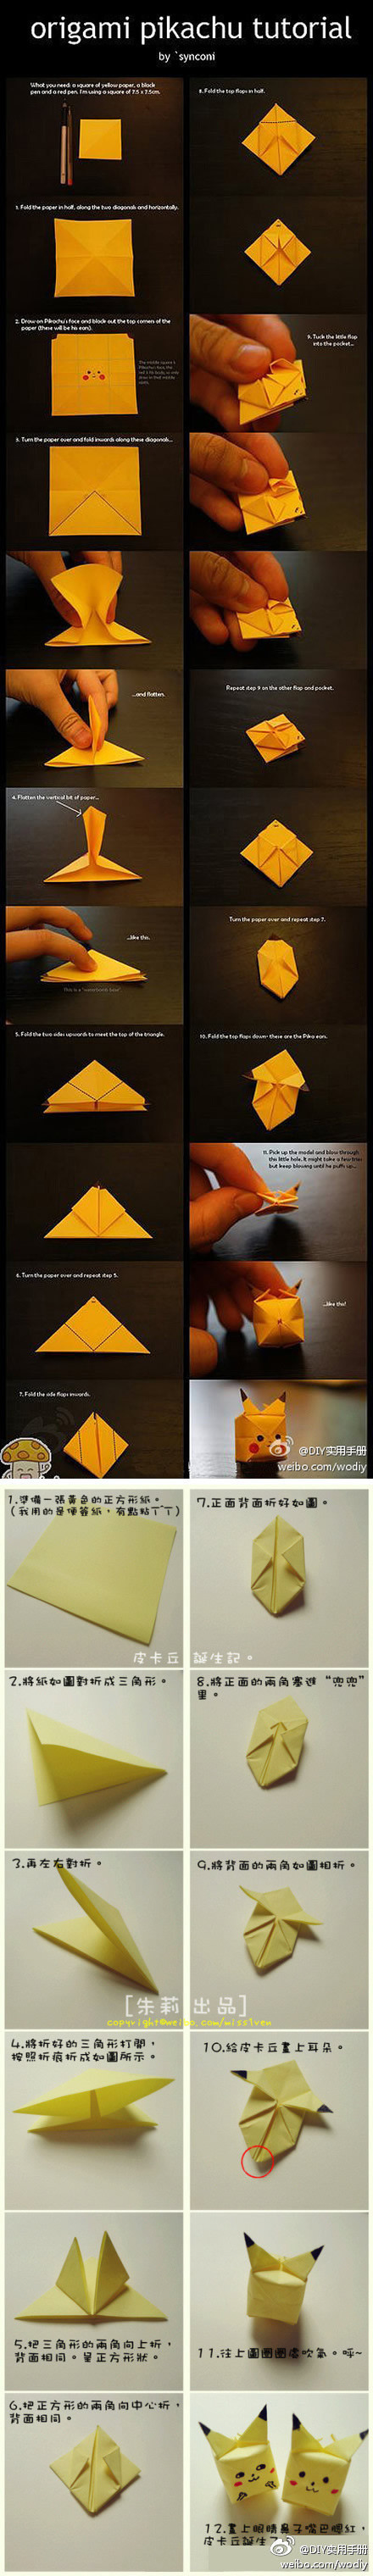 两款皮卡丘手工折纸制作方法,简单易学哟